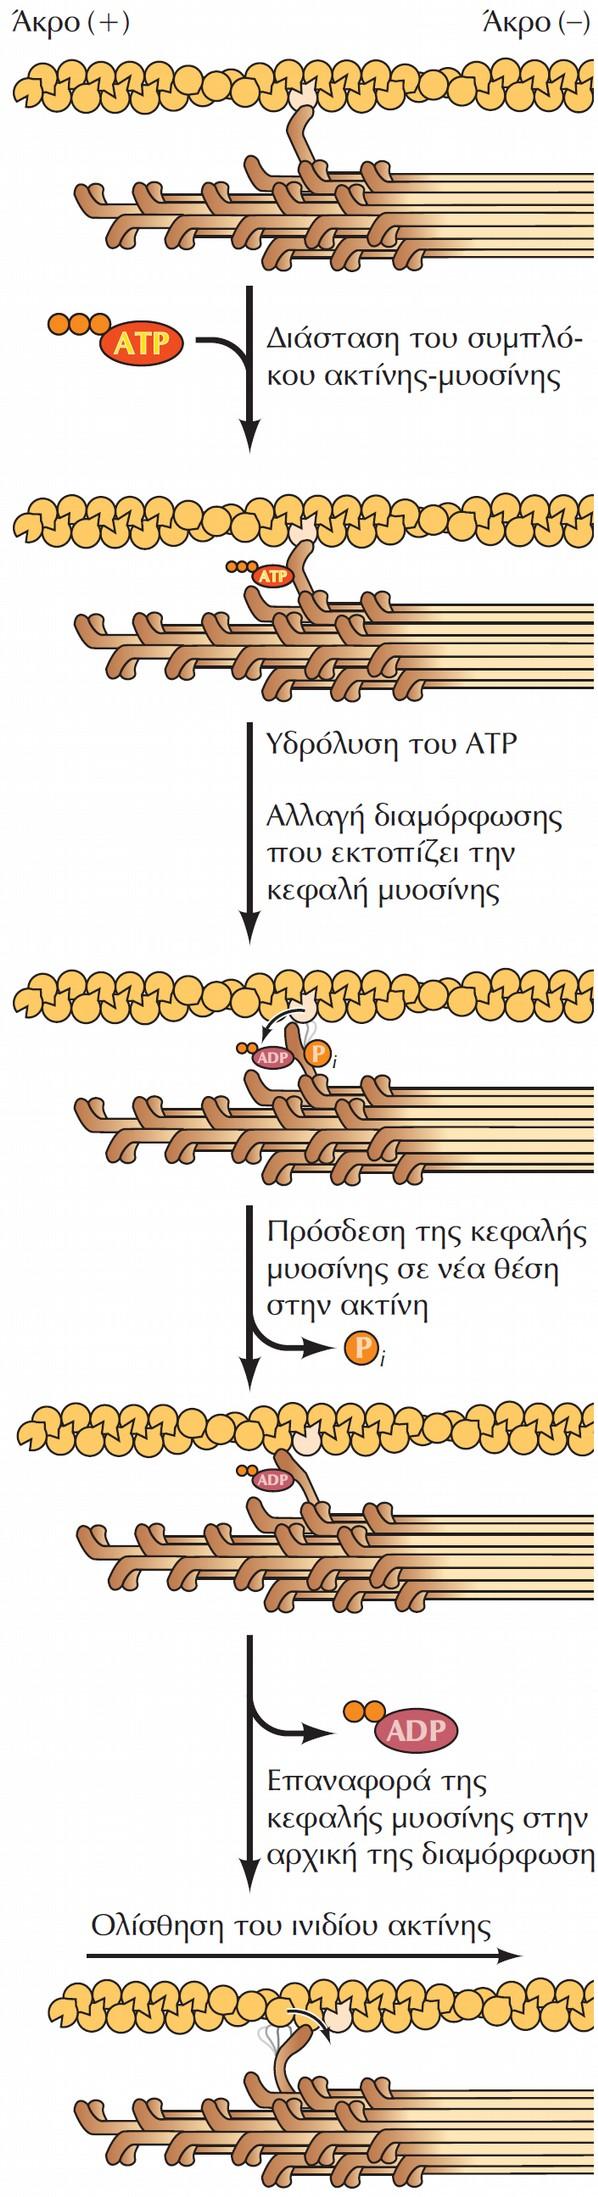 Μοντέλο δράσης της μυοσίνης. Α) Η πρόσδεση του ATP αποσυνδέει τη μυοσίνη από την ακτίνη. Β) η υδρόλυση του ATP επάγει μια αλλαγή διαμόρφωσης που μετατοπίζει την κεφαλή της μυοσίνης.